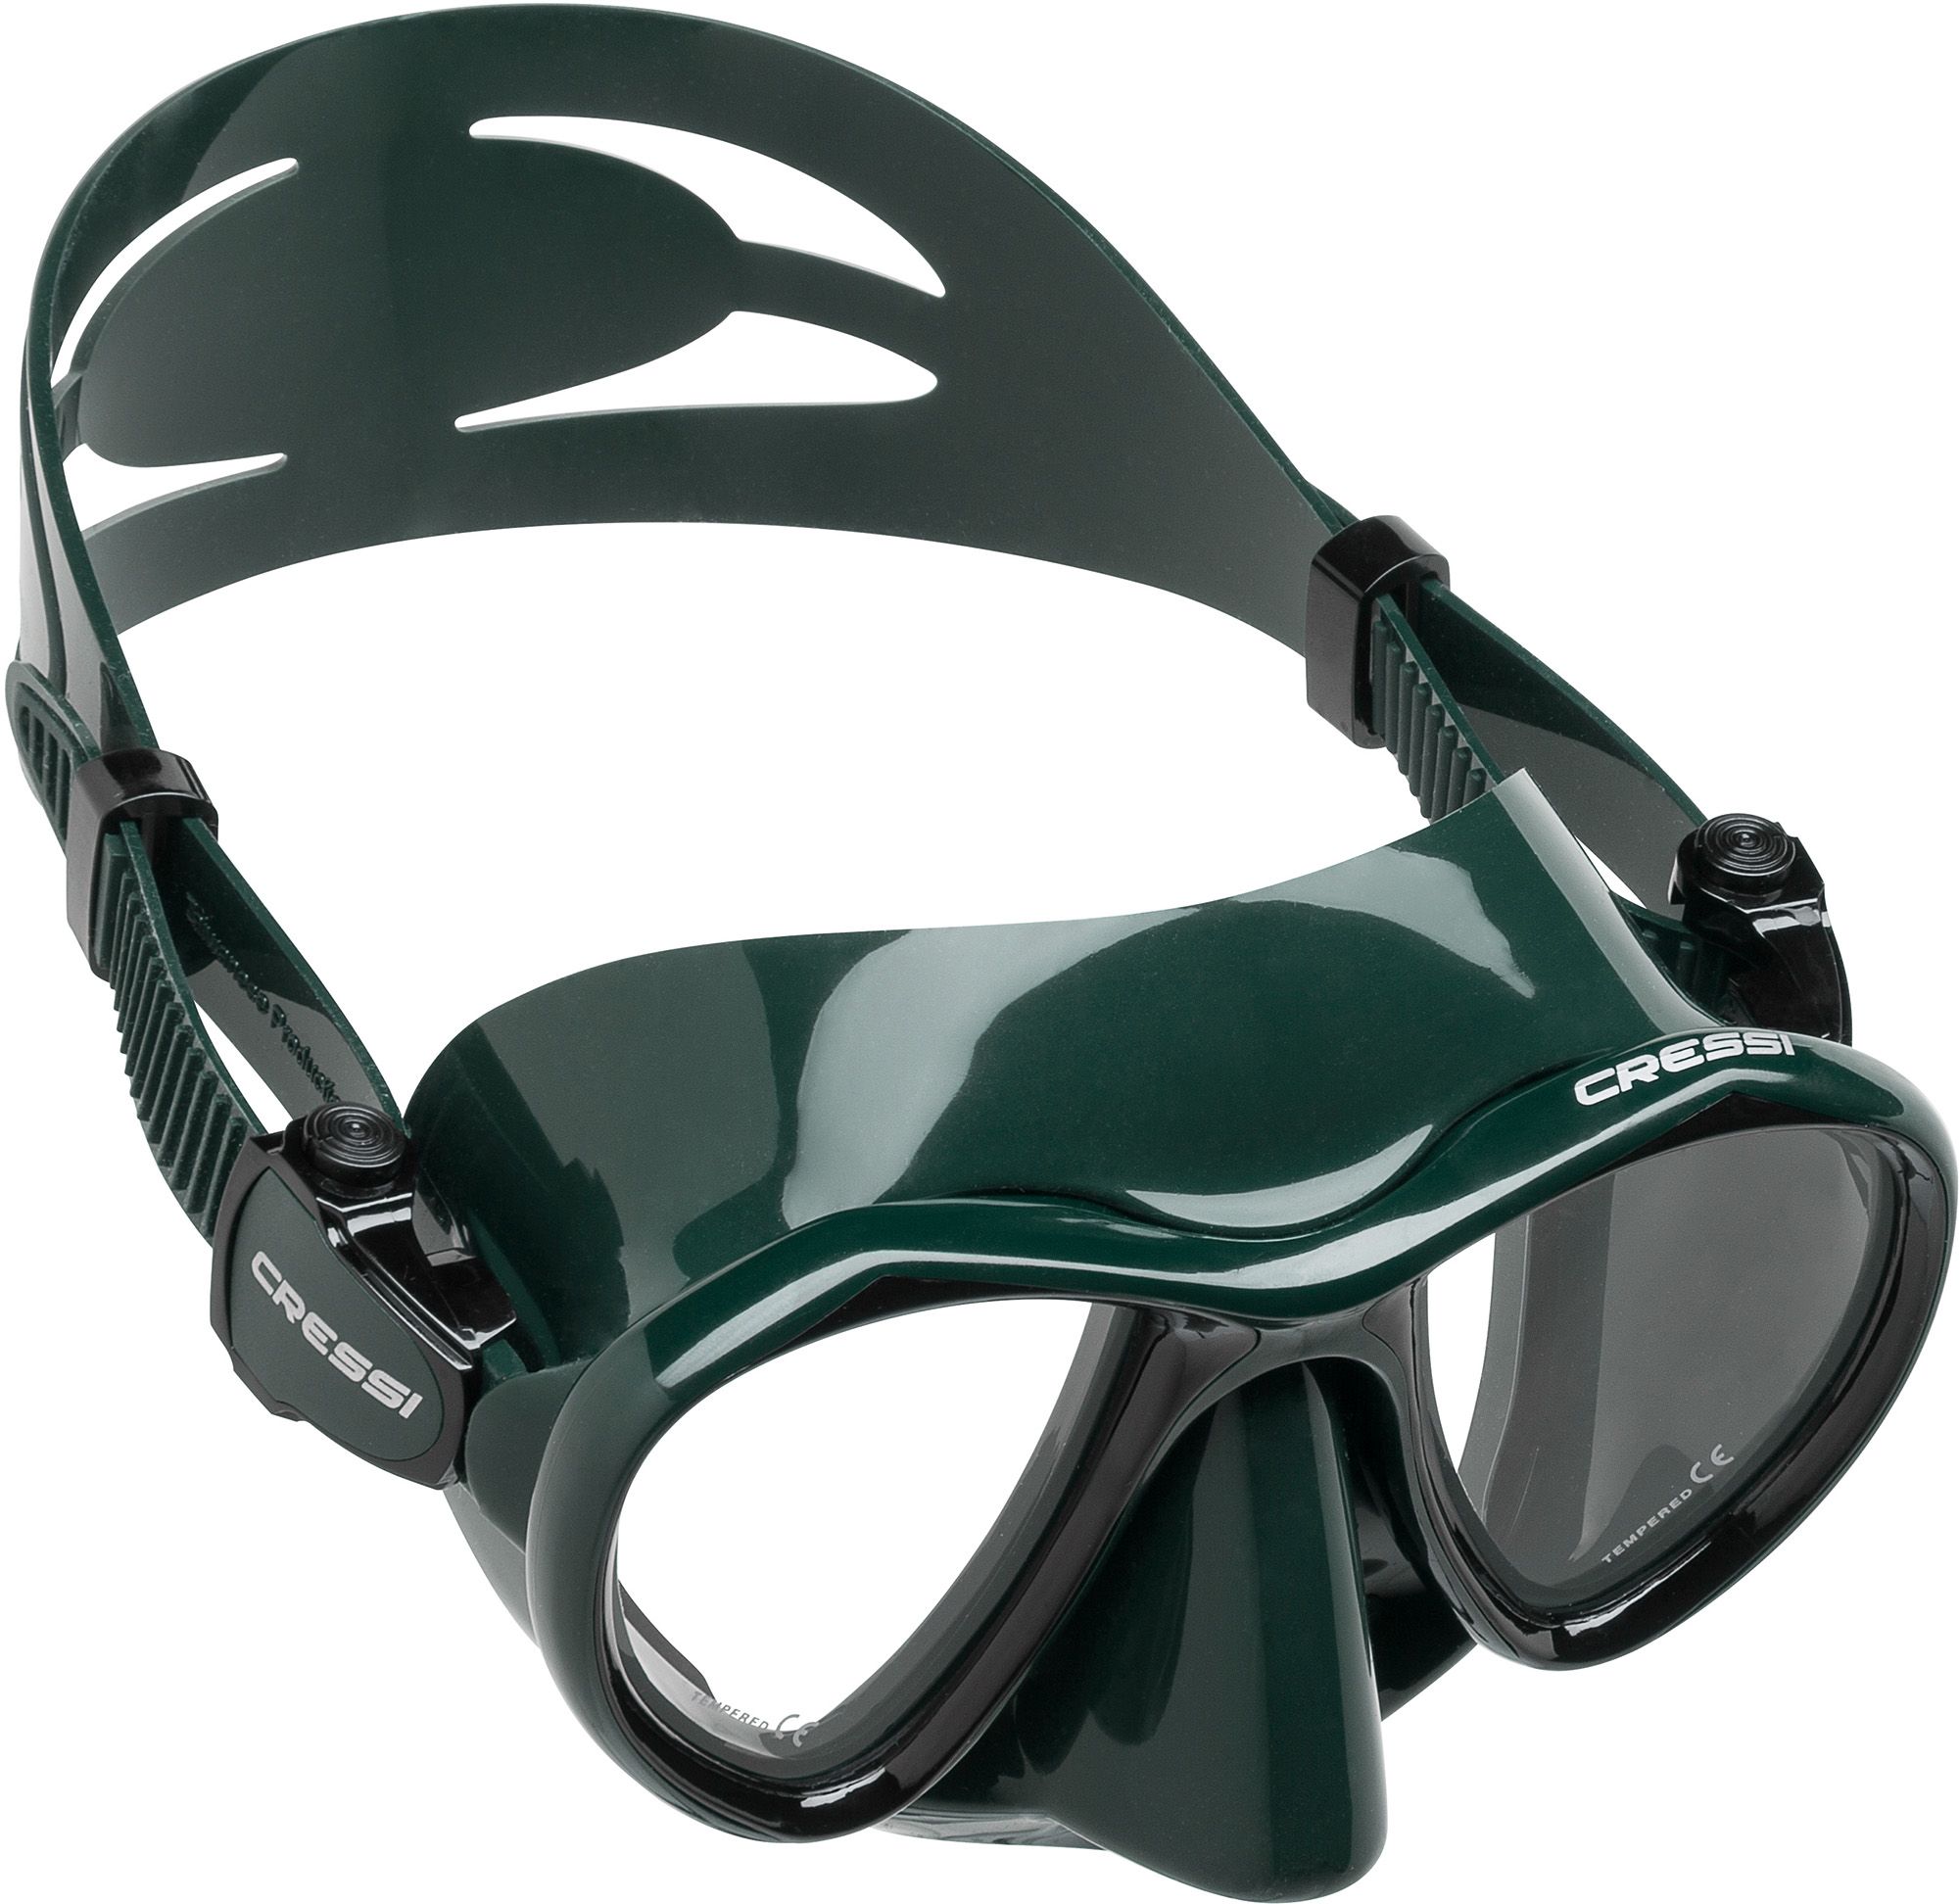 Photos - Swimming Mask Cressi Sub Cressi Metis Snorkel Mask, Green/Green 20CREAMTSXXXXXXXXSWE 